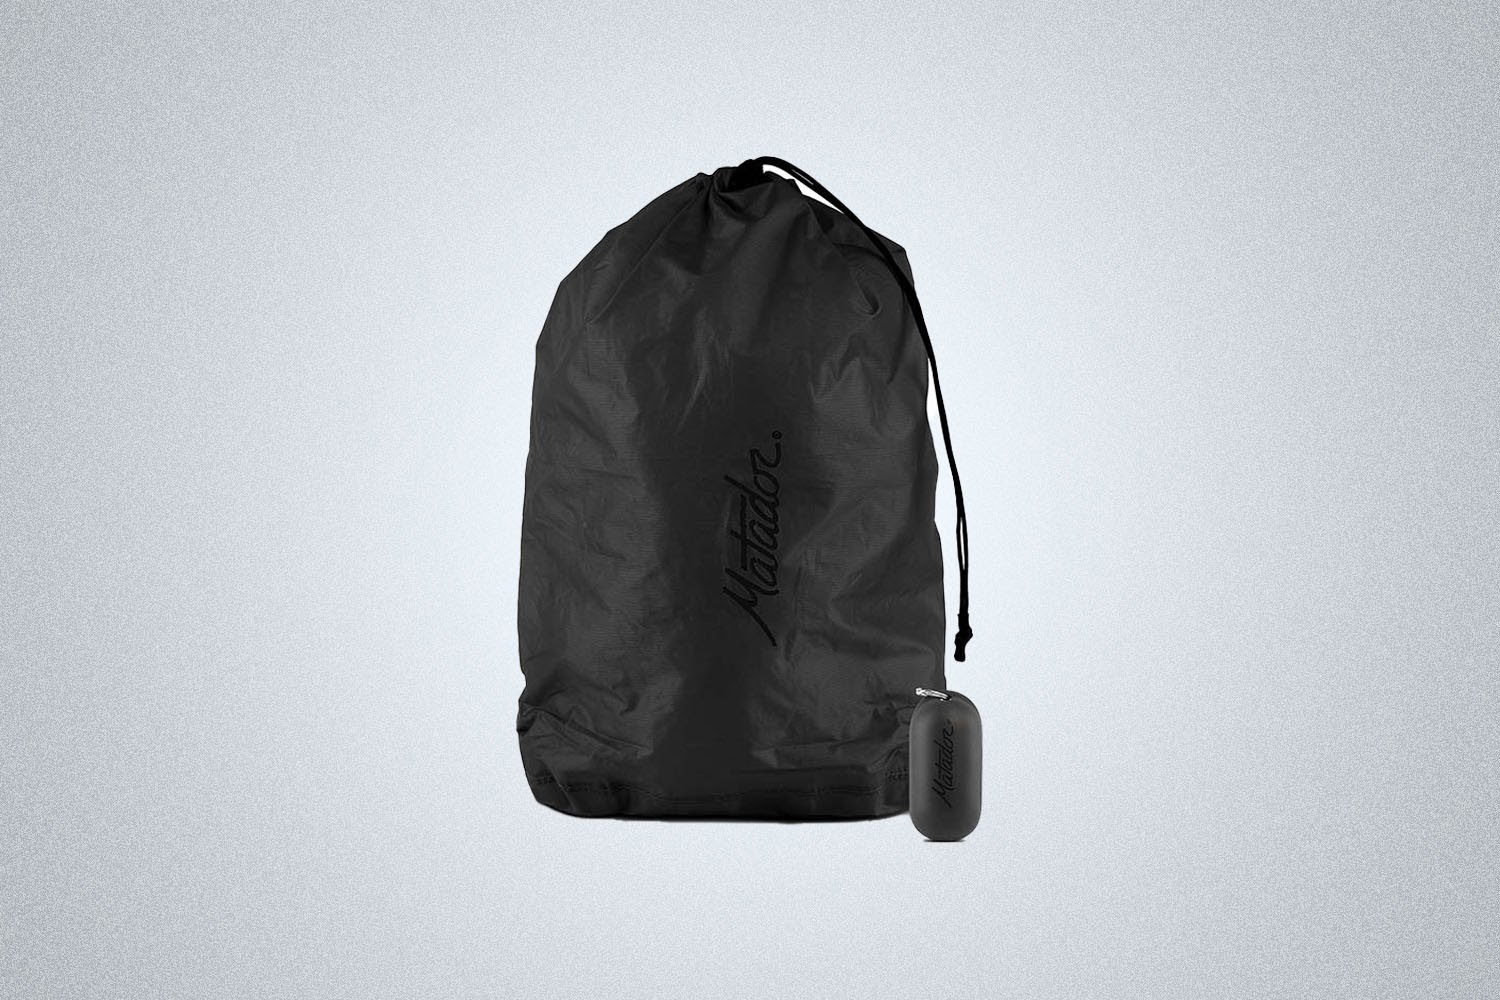 a black textured bag from Matador